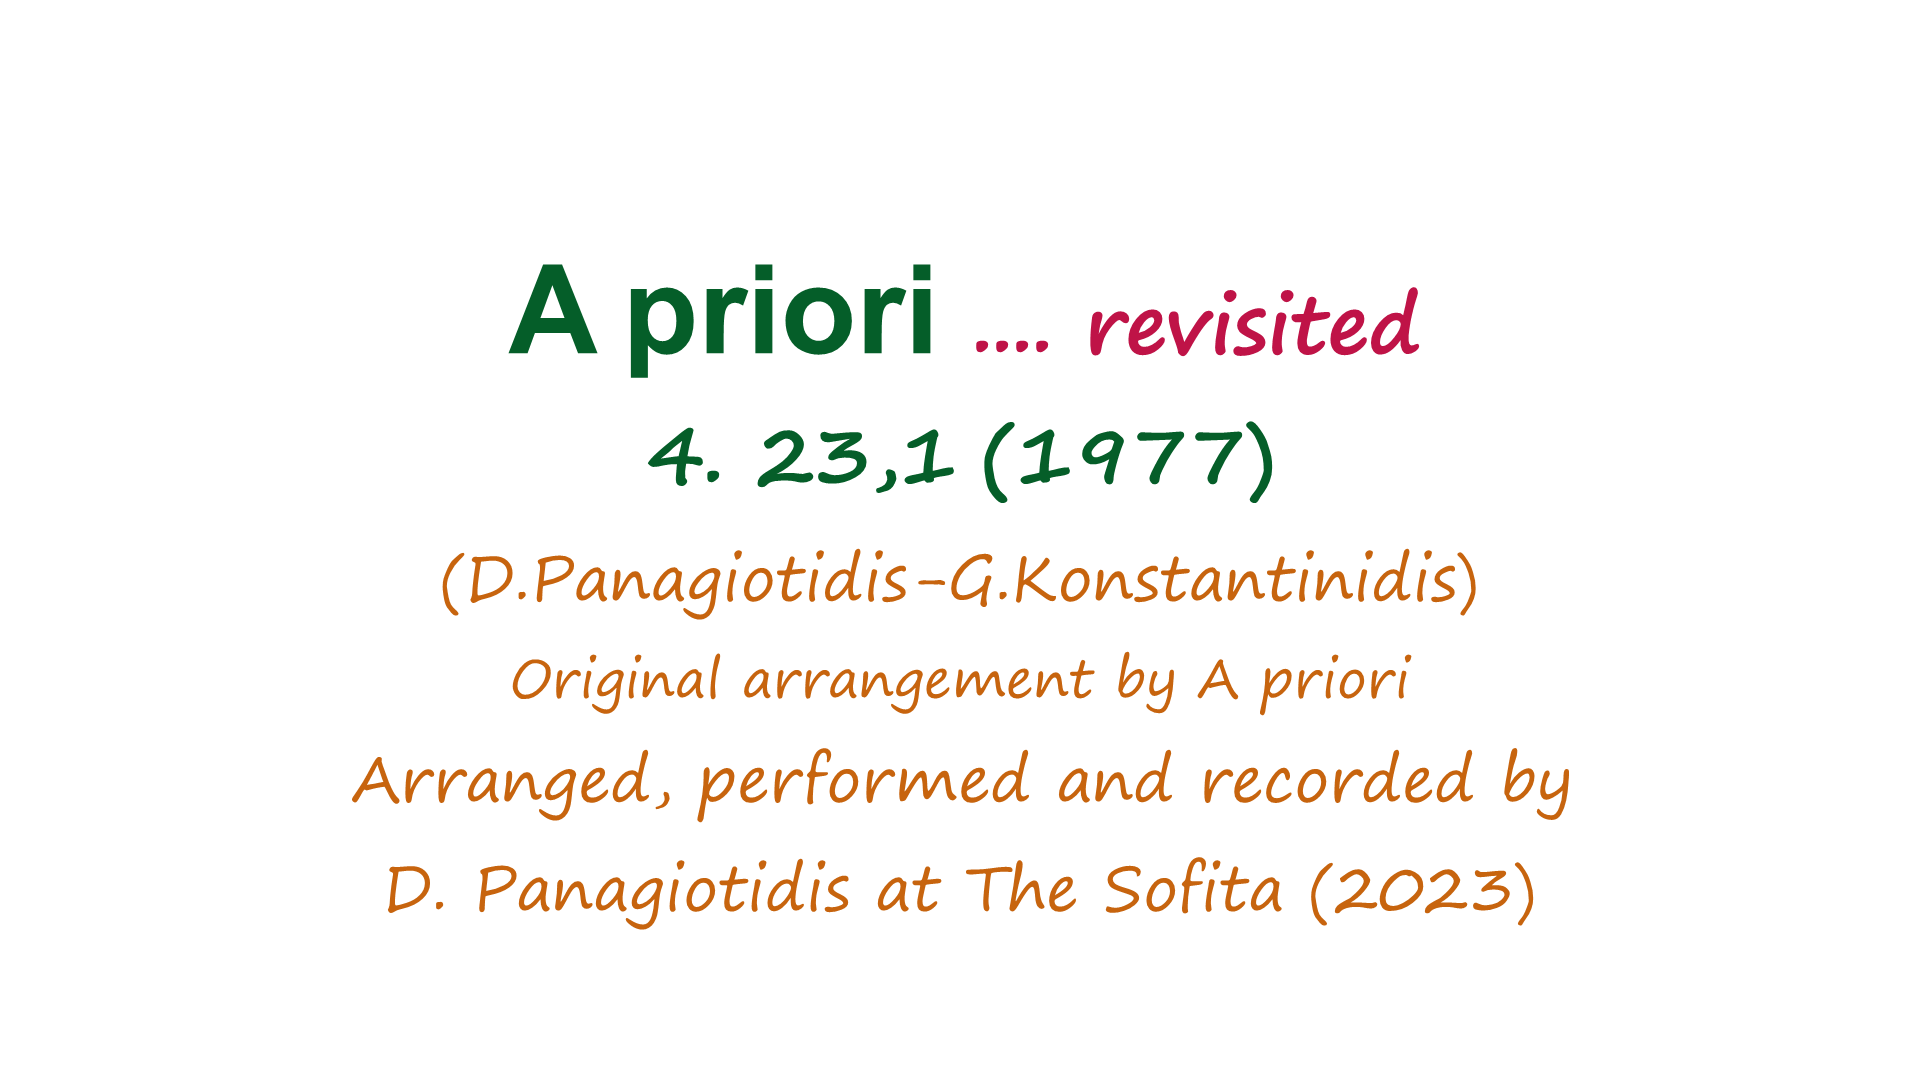 Περισσότερες πληροφορίες για "Dimsonic - A priori ...revisited. 4. 23,1"